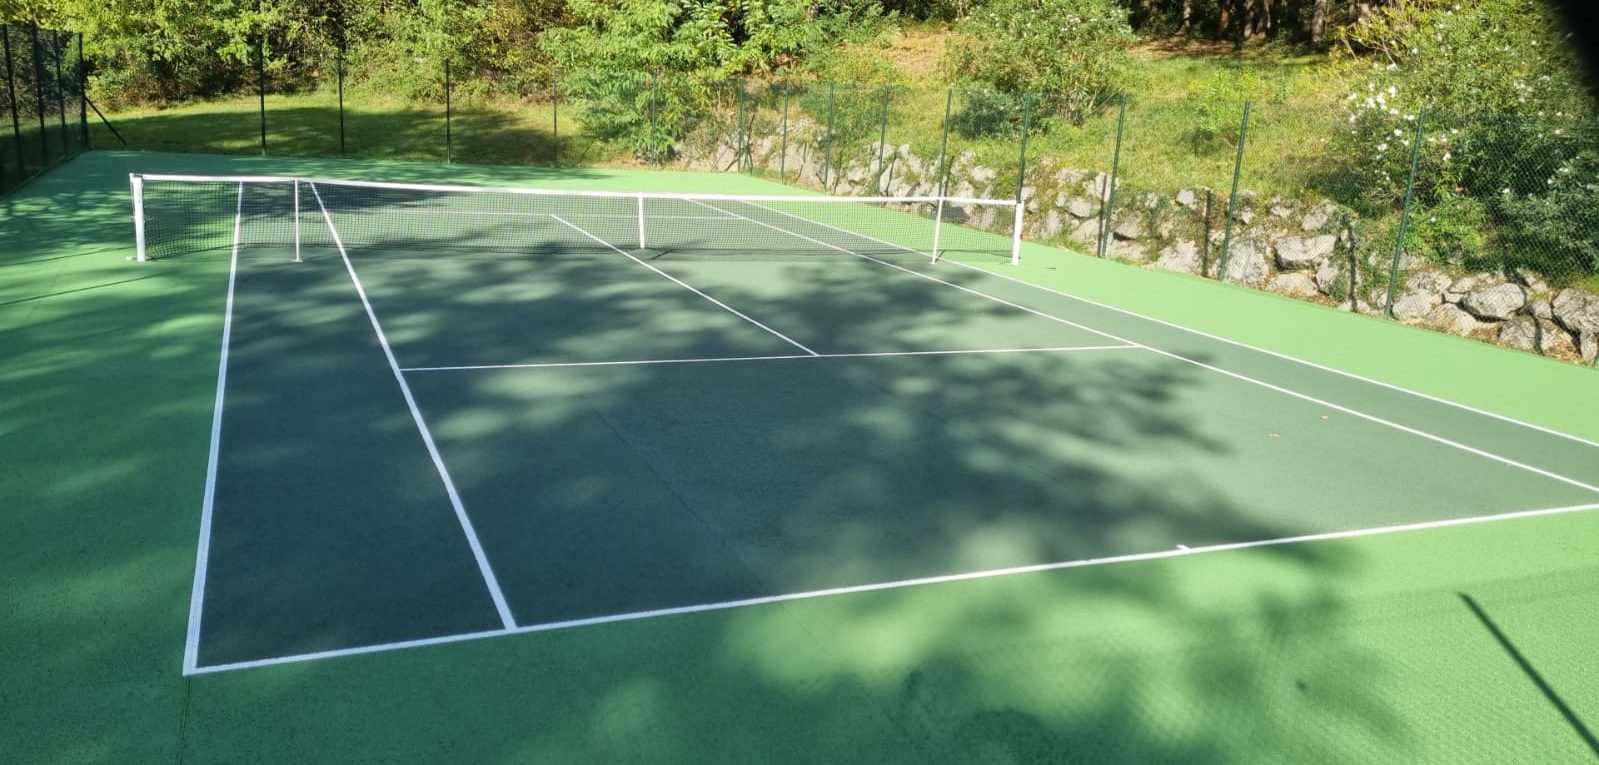 Quelle garantie dois-je attendre d’un professionnel de la rénovation de courts de tennis?